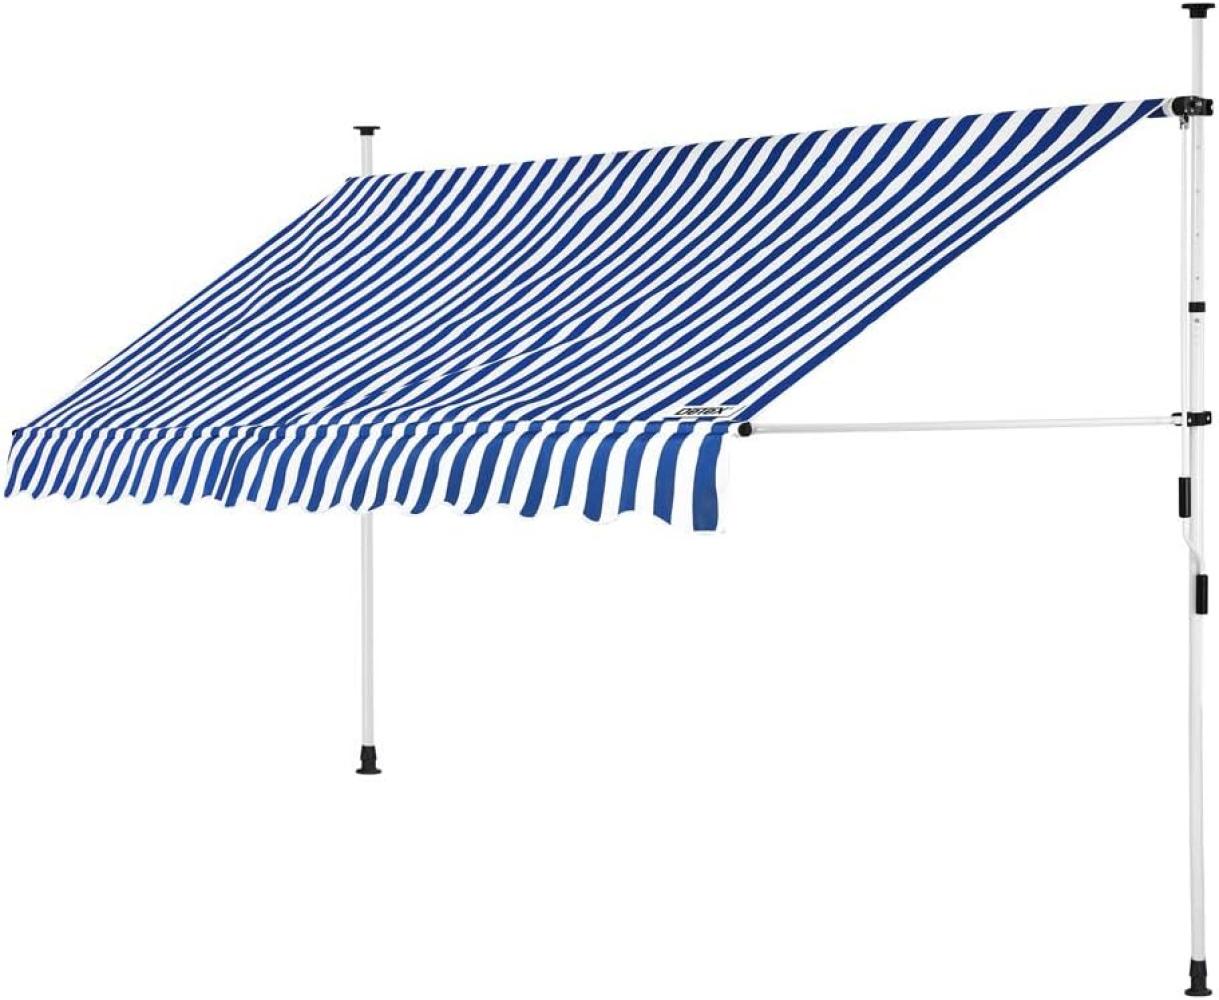 Detex Markise Balkonmarkise Klemmmarkise 150 - 400cm Sonnenmarkise UV- und witterungsbeständig Blau, Weiß, 200cm höhenverstellbar Bild 1